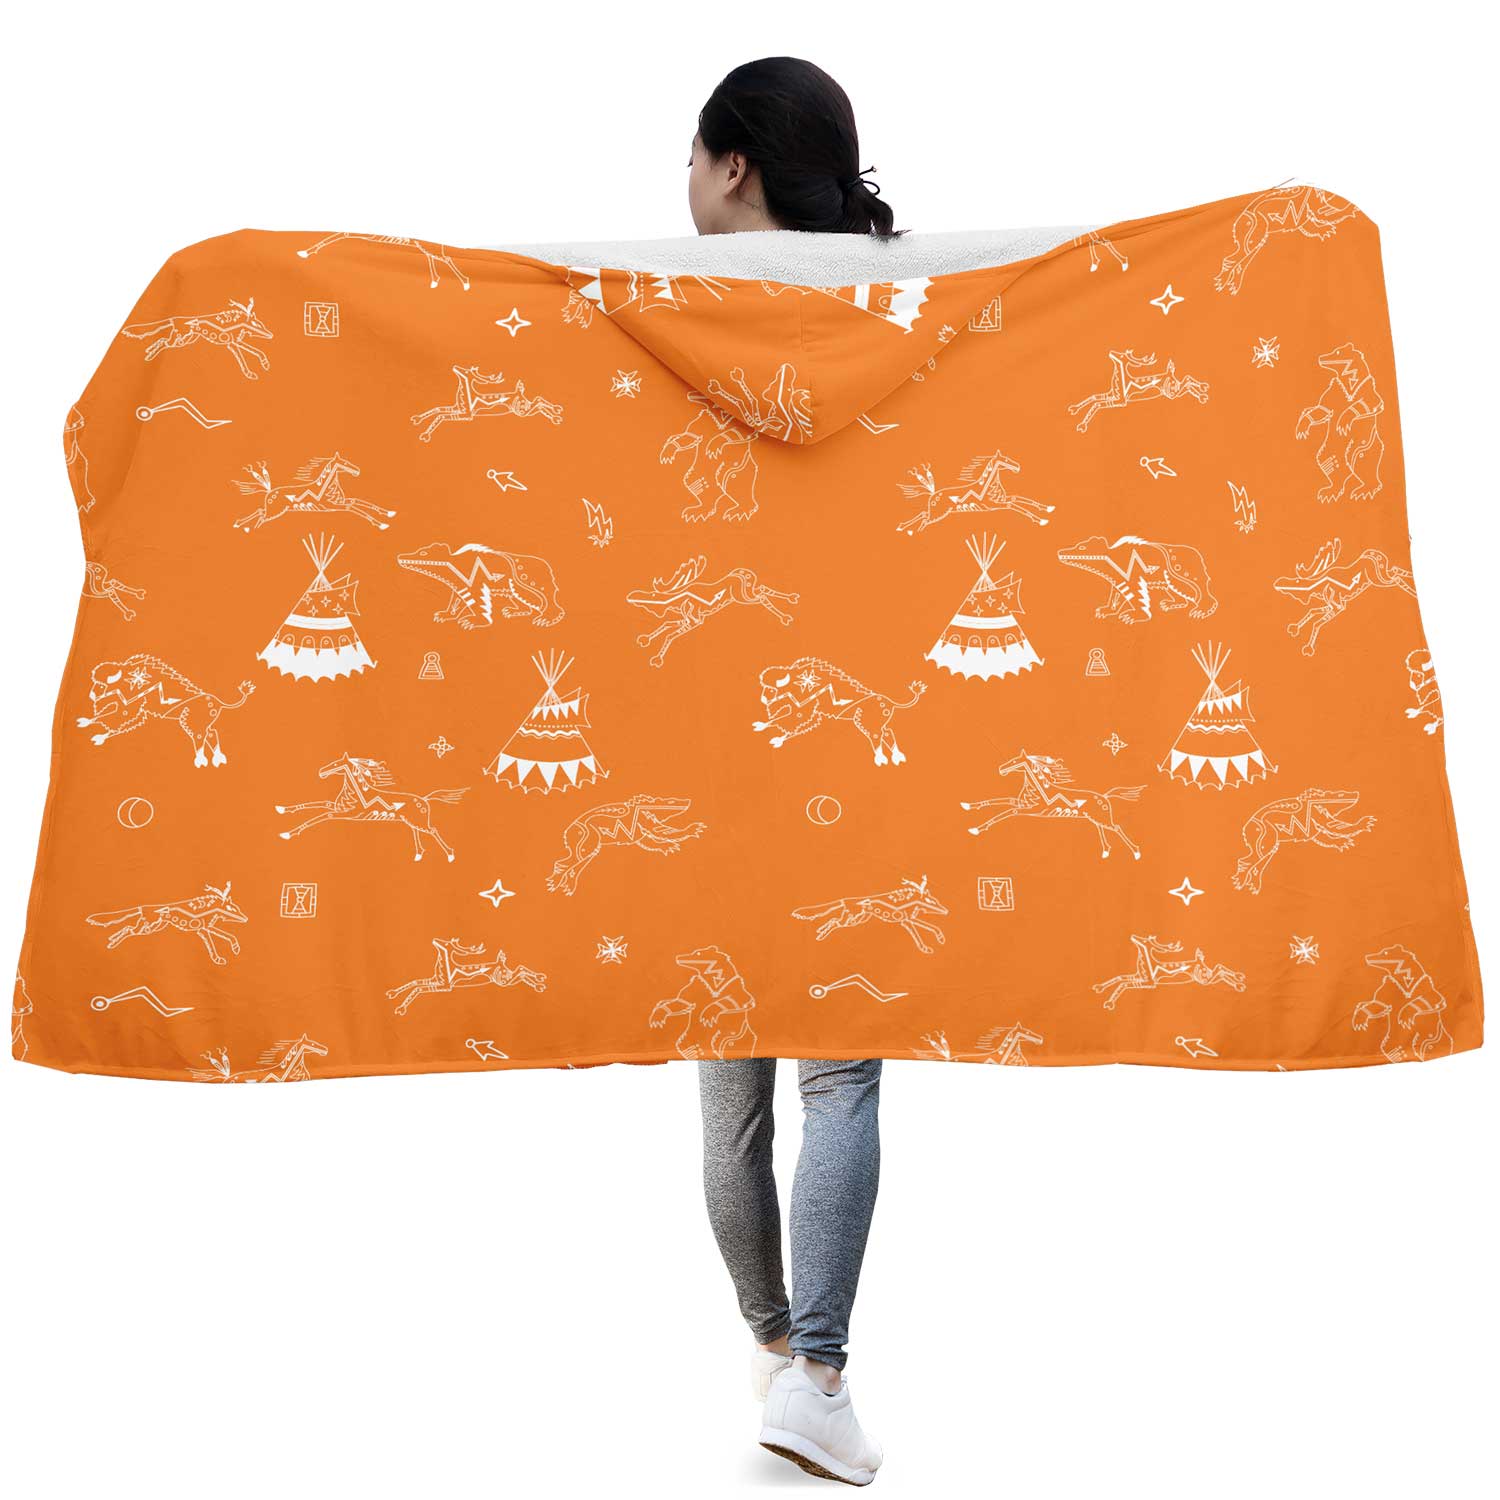 Ledger Dabbles Orange Hooded Blanket